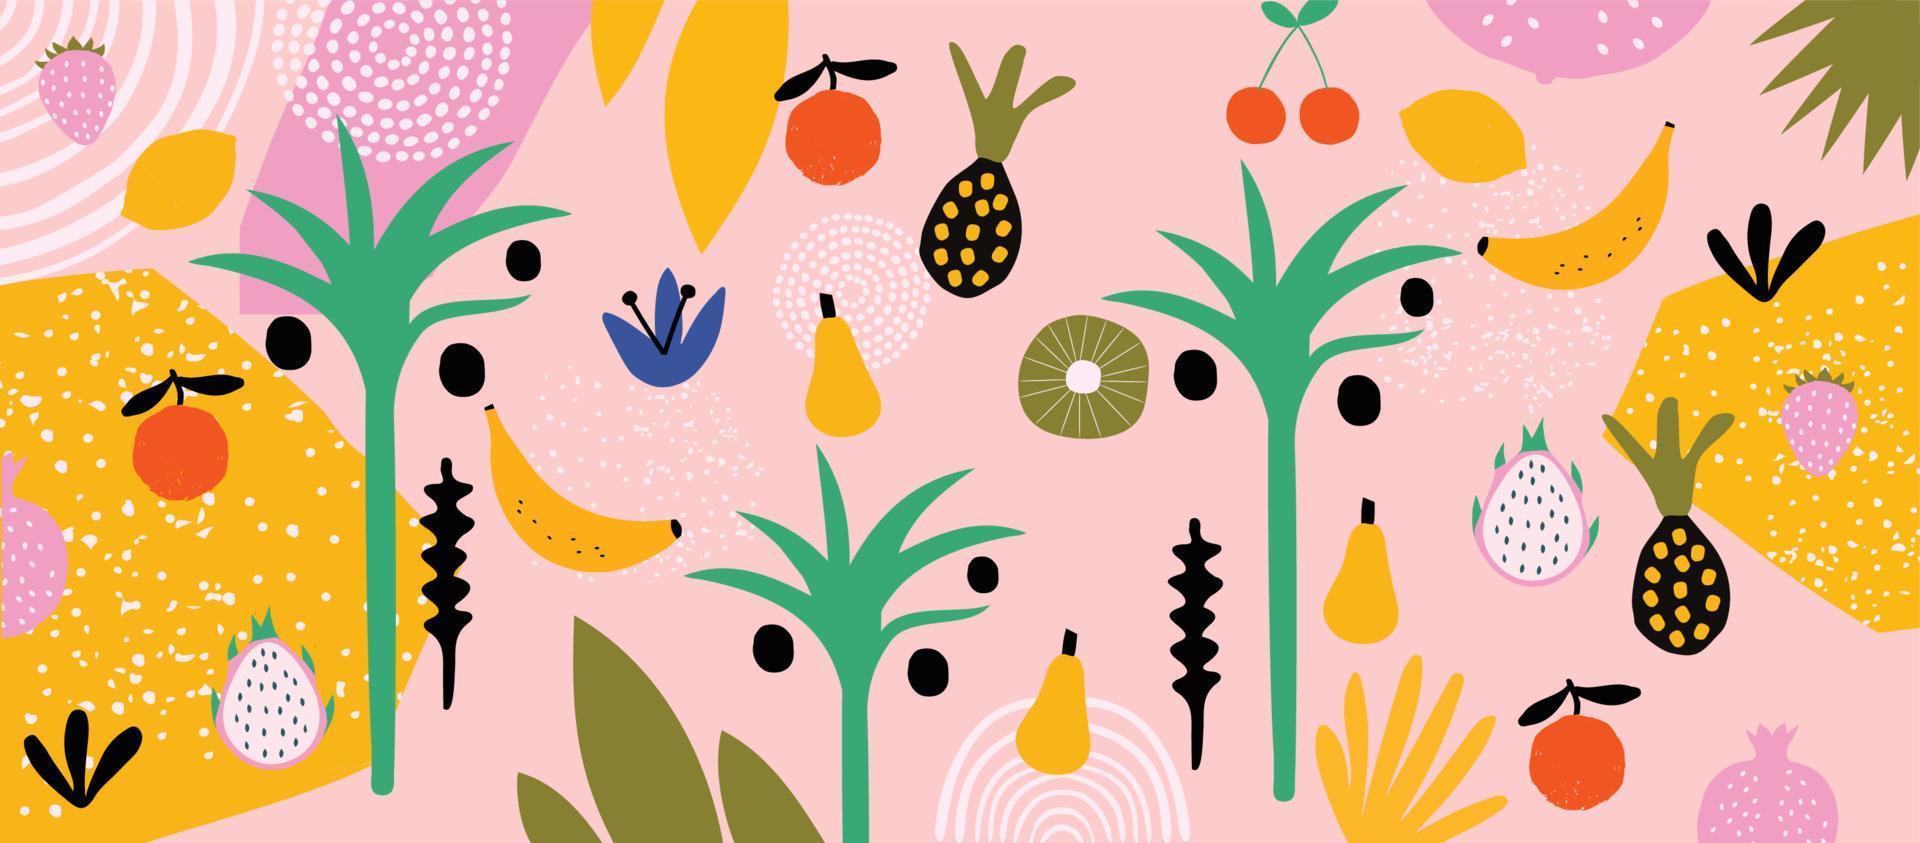 färgrik organisk former klotter samling. söt botanisk former, slumpmässig barnslig klotter utskärningar av tropisk löv, frukt och blommor, dekorativ abstrakt konst vektor illustration